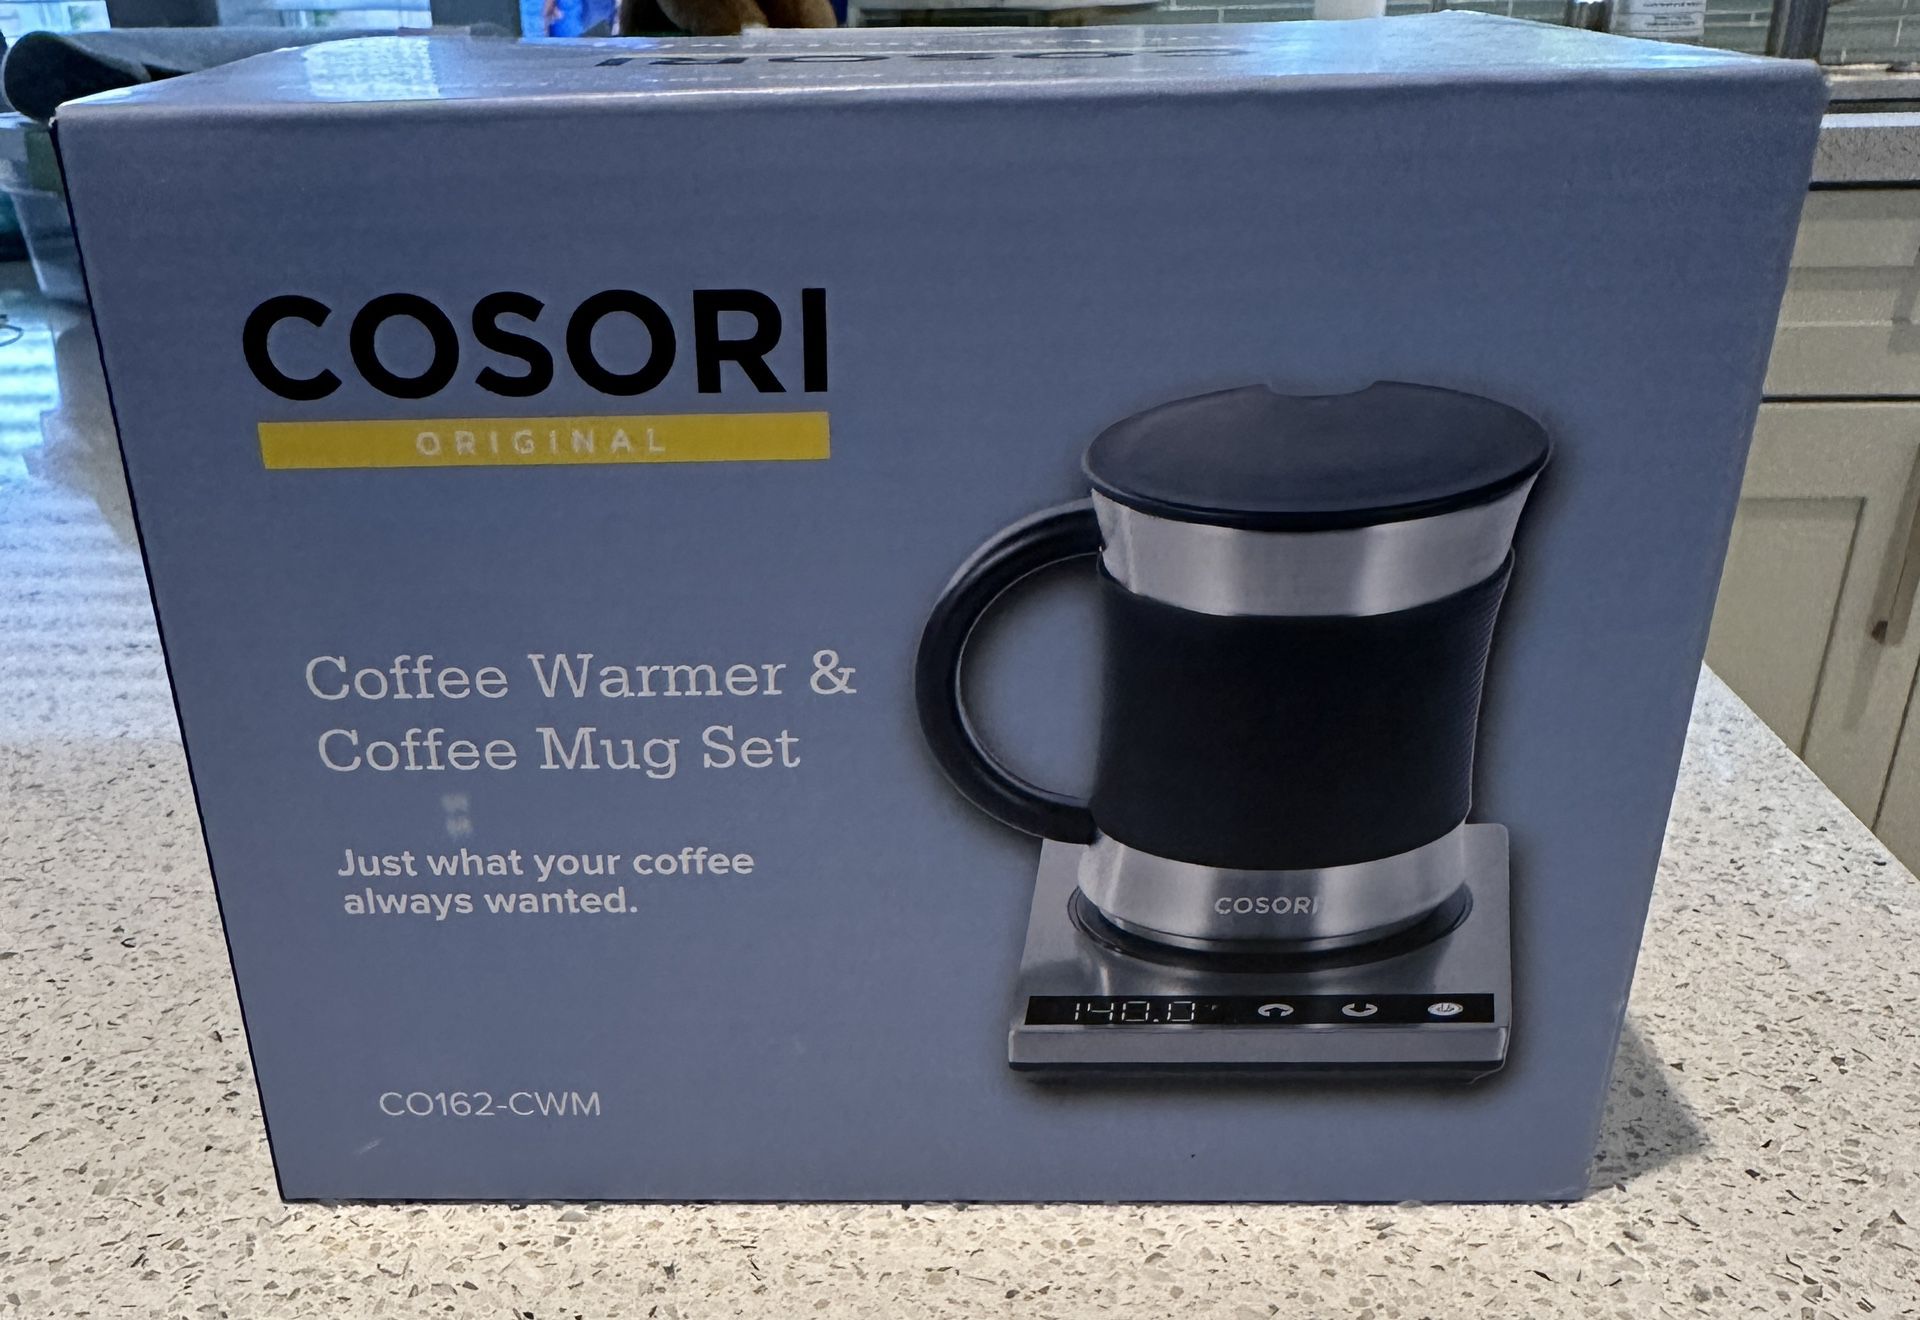  COSORI Coffee Mug Warmer & Mug Set, 304 Stainless